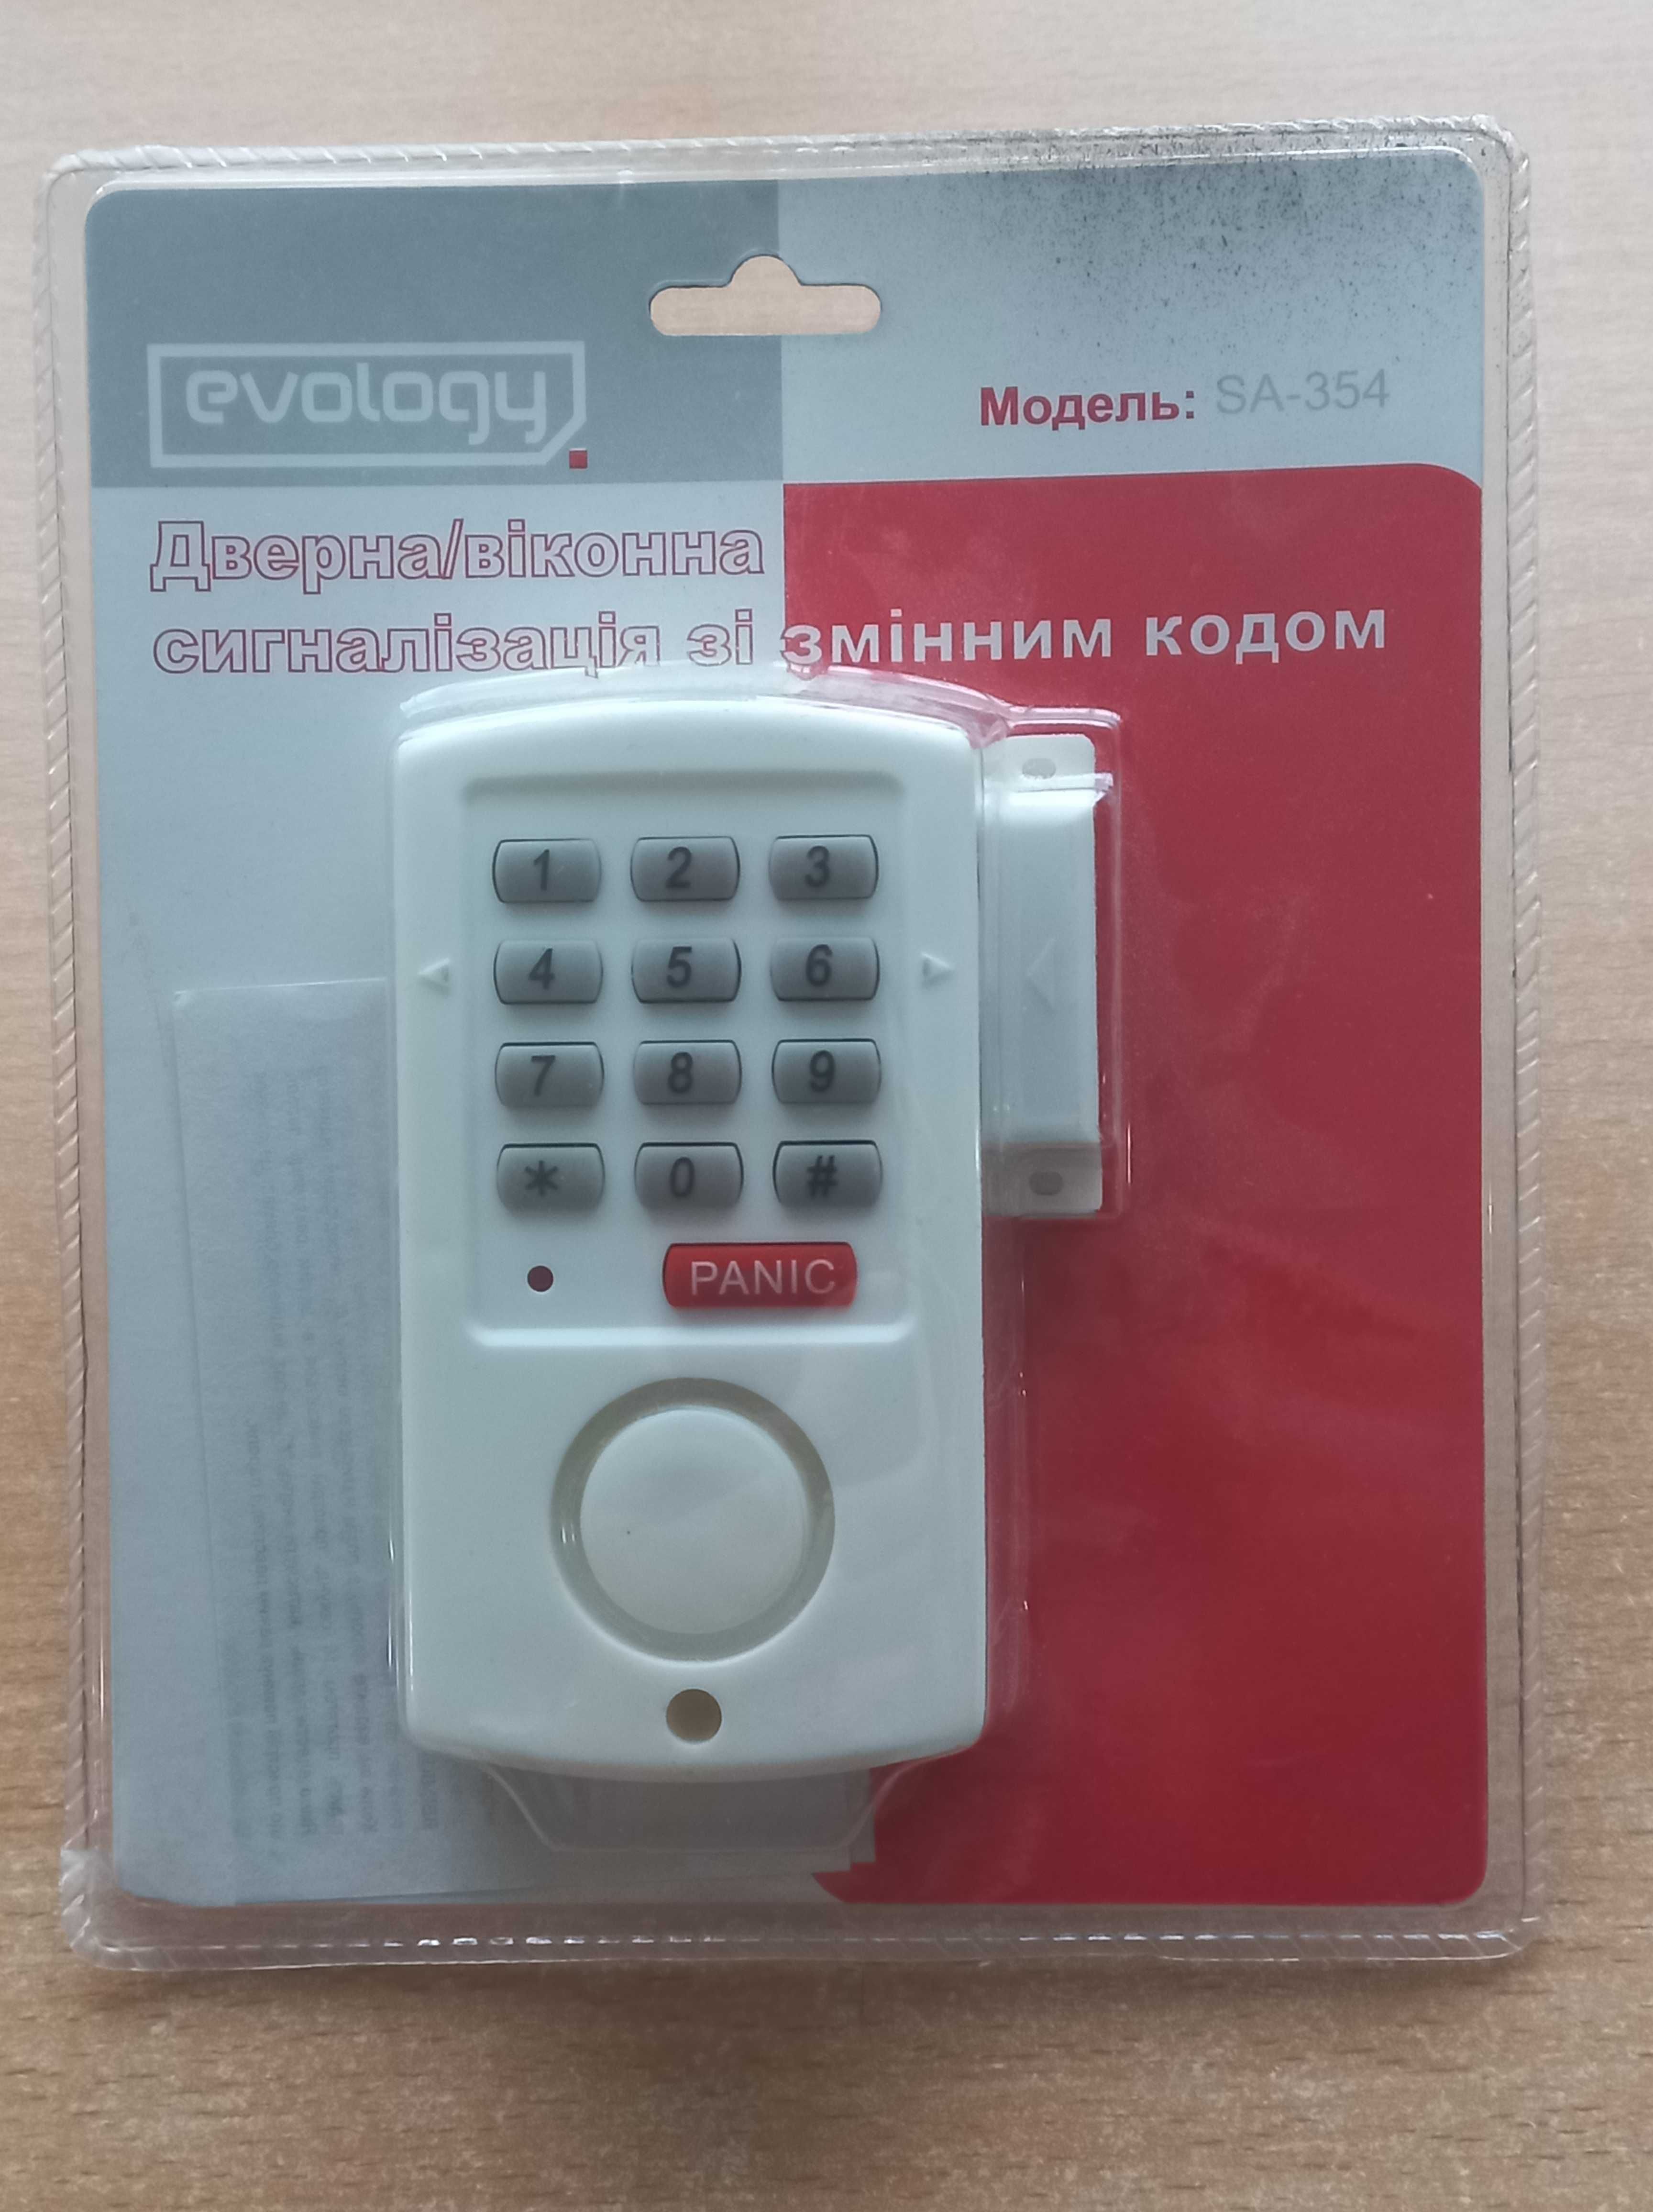 Регулятор РМТ-1А. Дверная сигнализация Keypad Alarm mini. Радиореле.